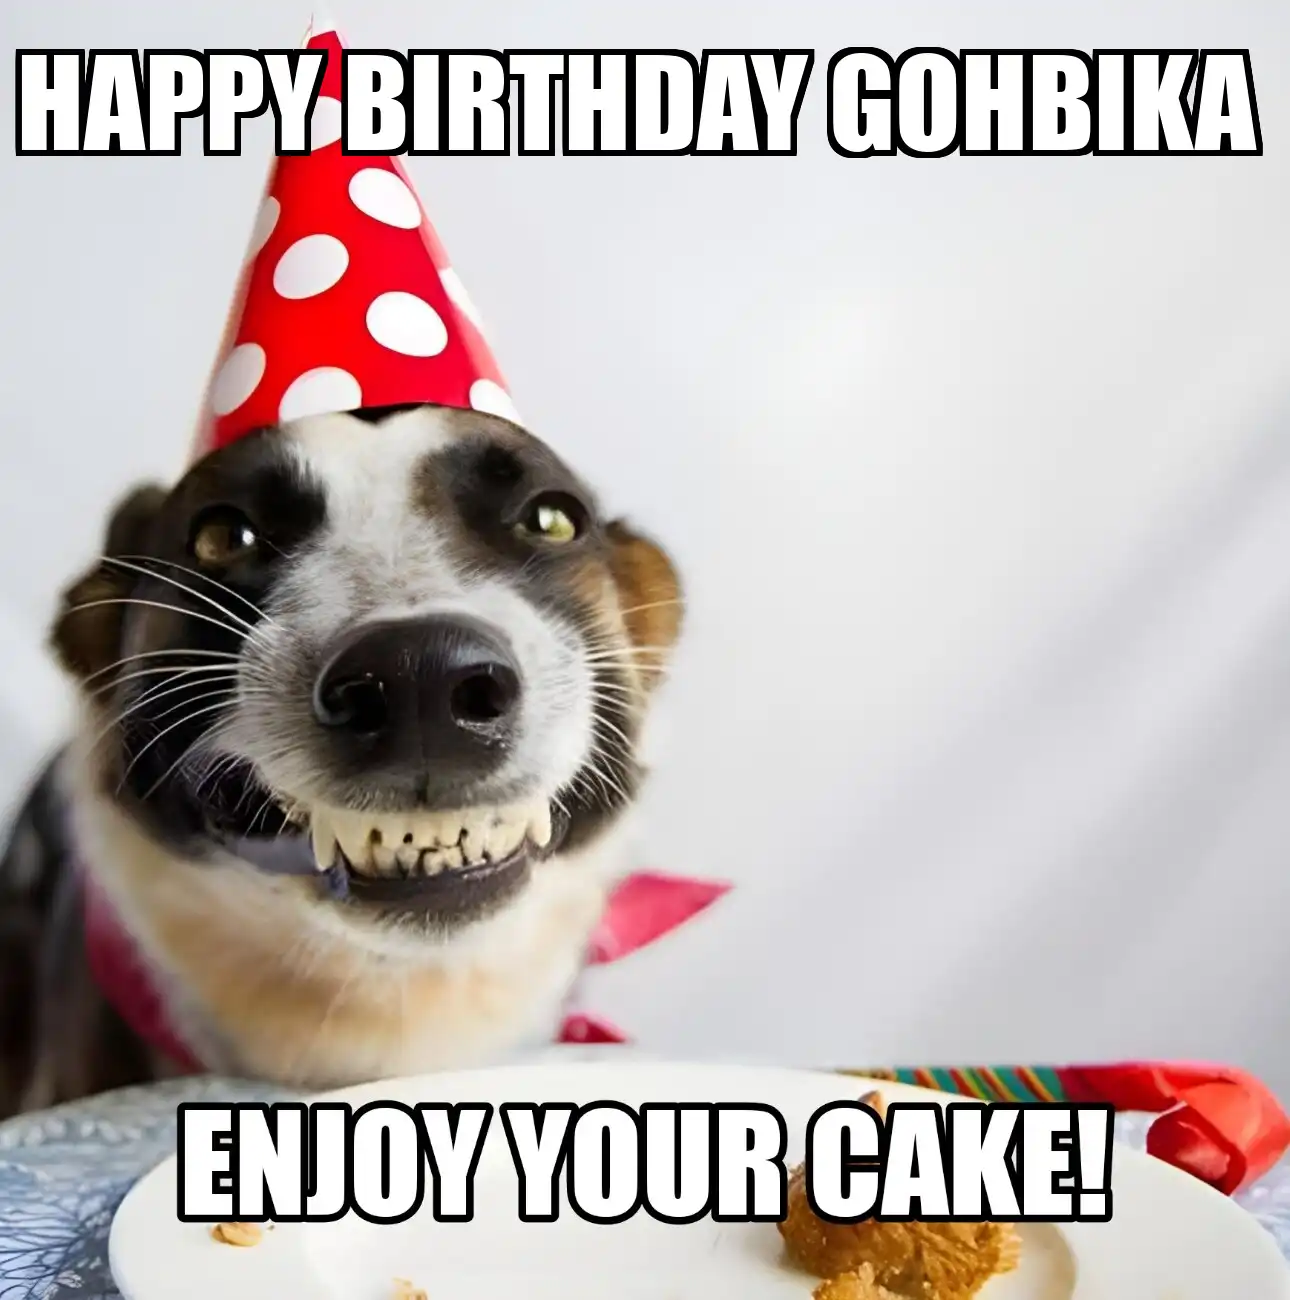 Happy Birthday Gohbika Enjoy Your Cake Dog Meme